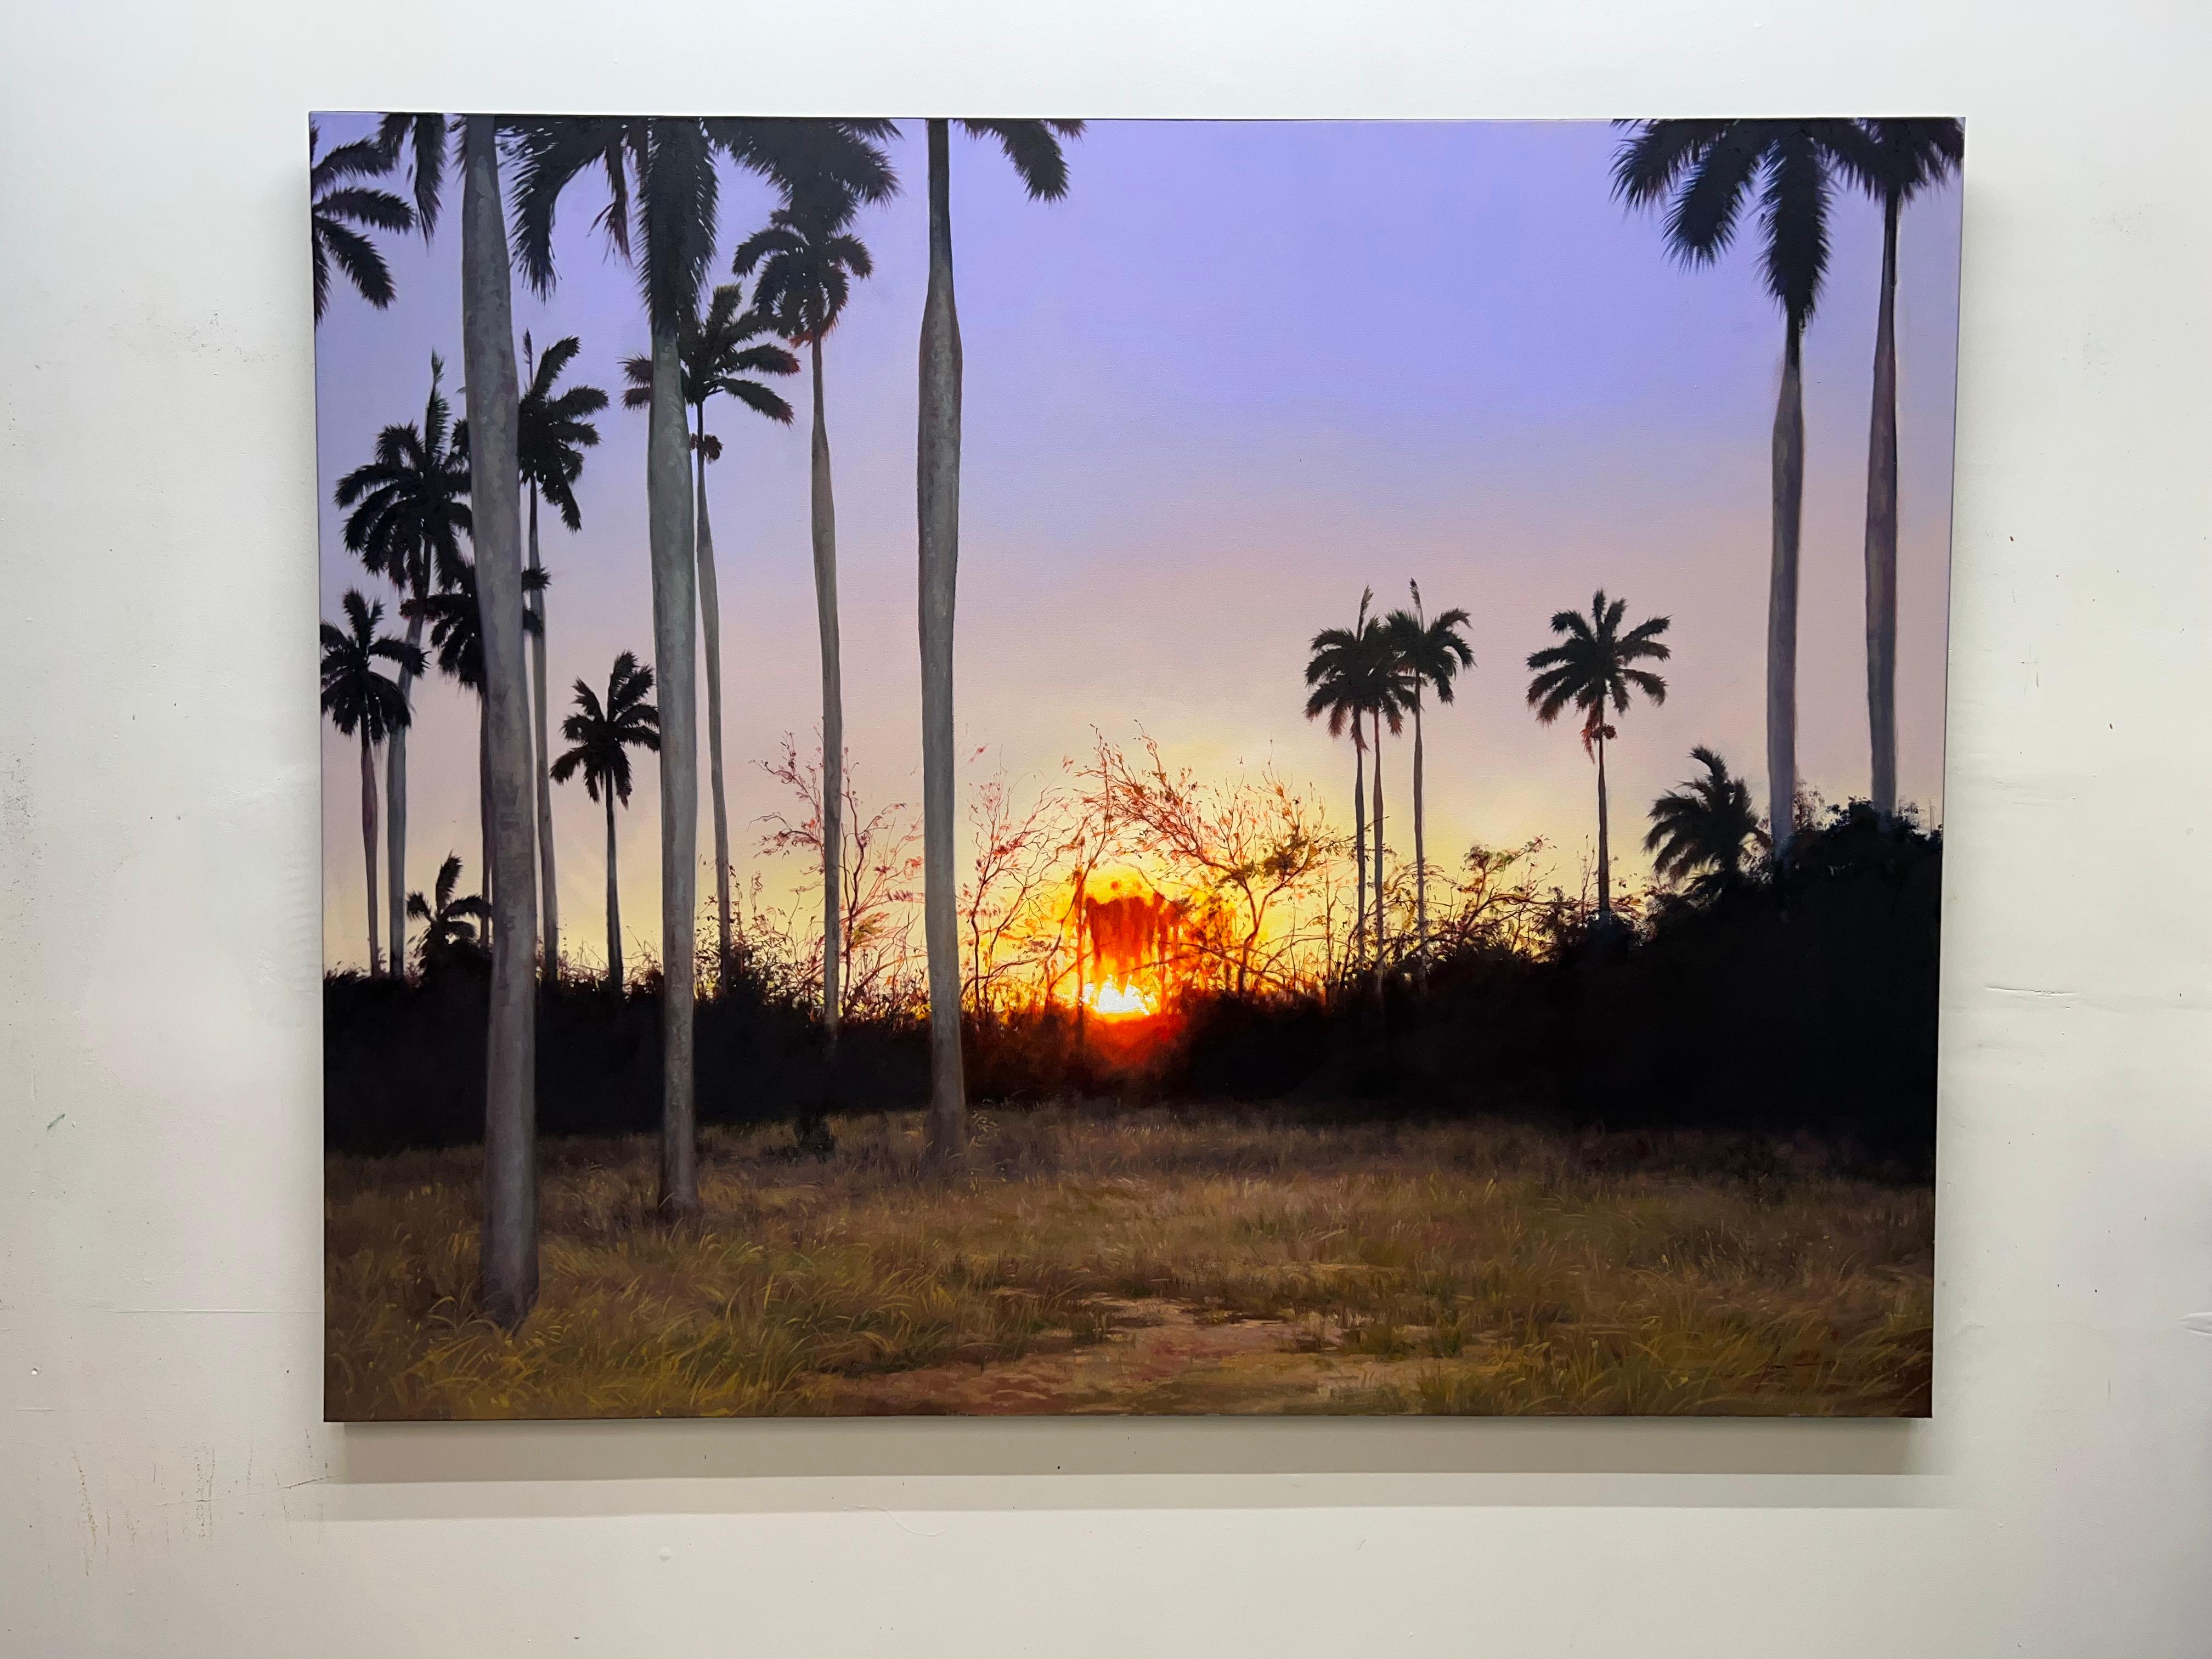 <p>Kommentare des Künstlers<br>Inspiriert von einer Dämmerung, deren Zeuge er wurde, hält der Künstler Jose Luis Bermudez die untergehende Sonne in einer natürlichen Landschaft fest. Im Licht des Sonnenuntergangs färbt sich der Himmel in Rot-,